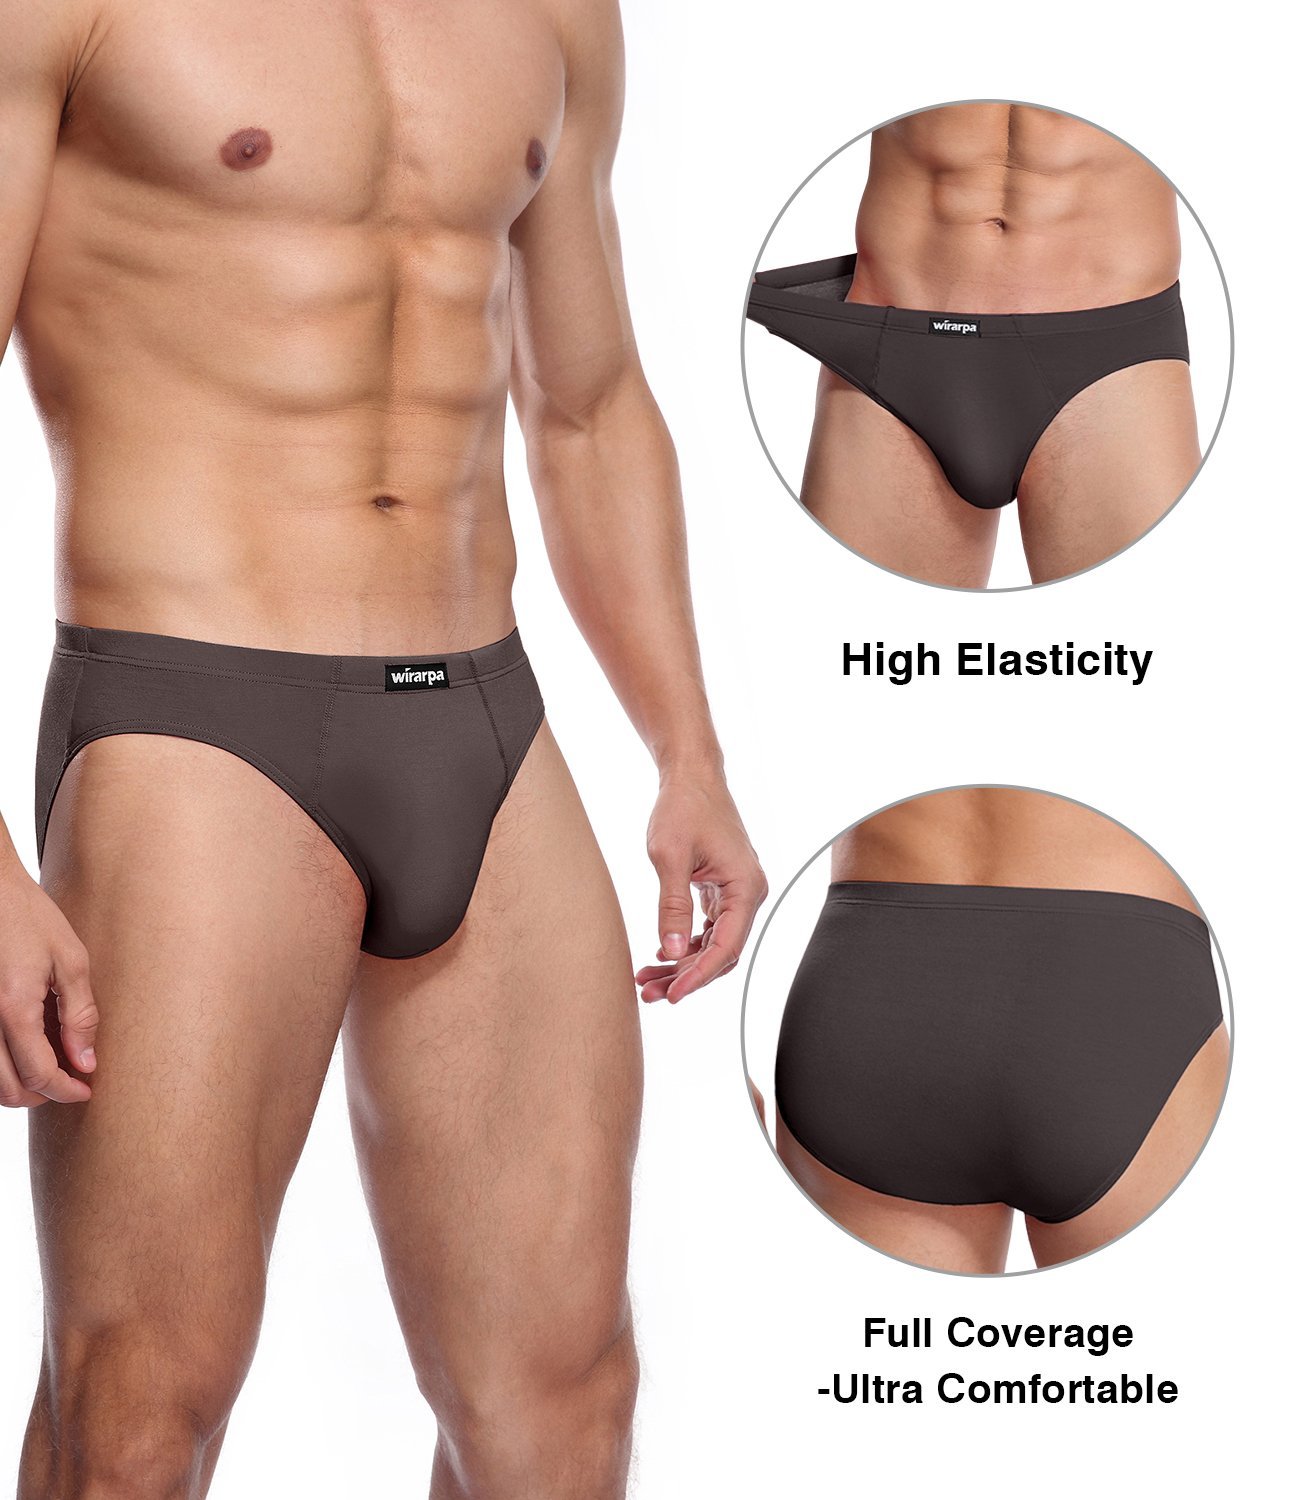 Modal Plain Men Underwear Brief, Type: Briefs at Rs 209/piece in